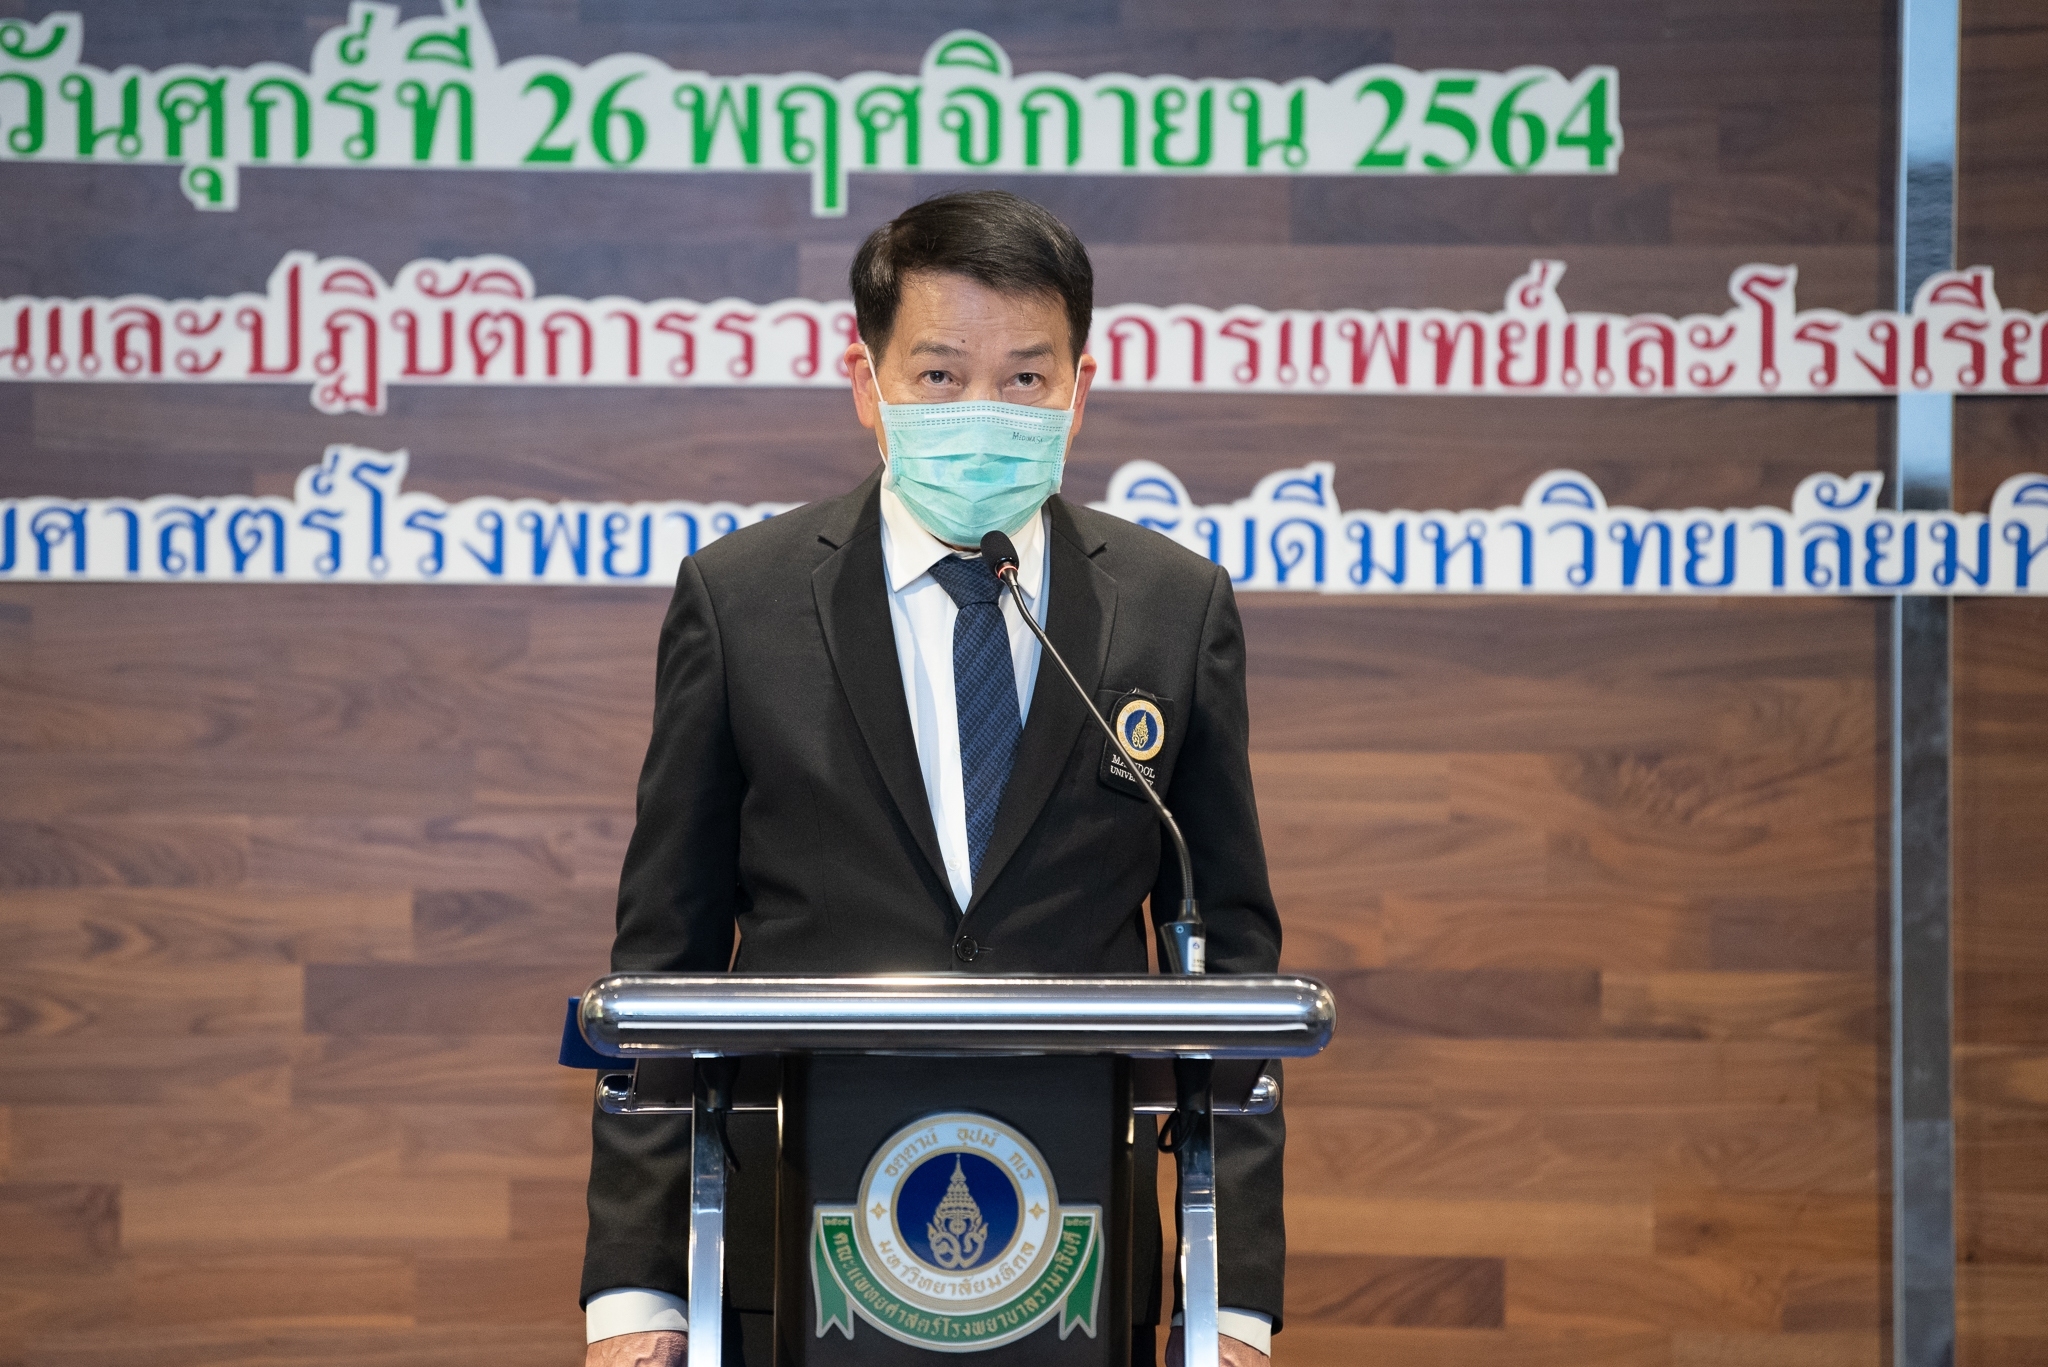 การประชุมสัมมนาเพื่อการขับเคลื่อนมาตรการลดการบริโภคเกลือโซเดียมในประชากรไทย